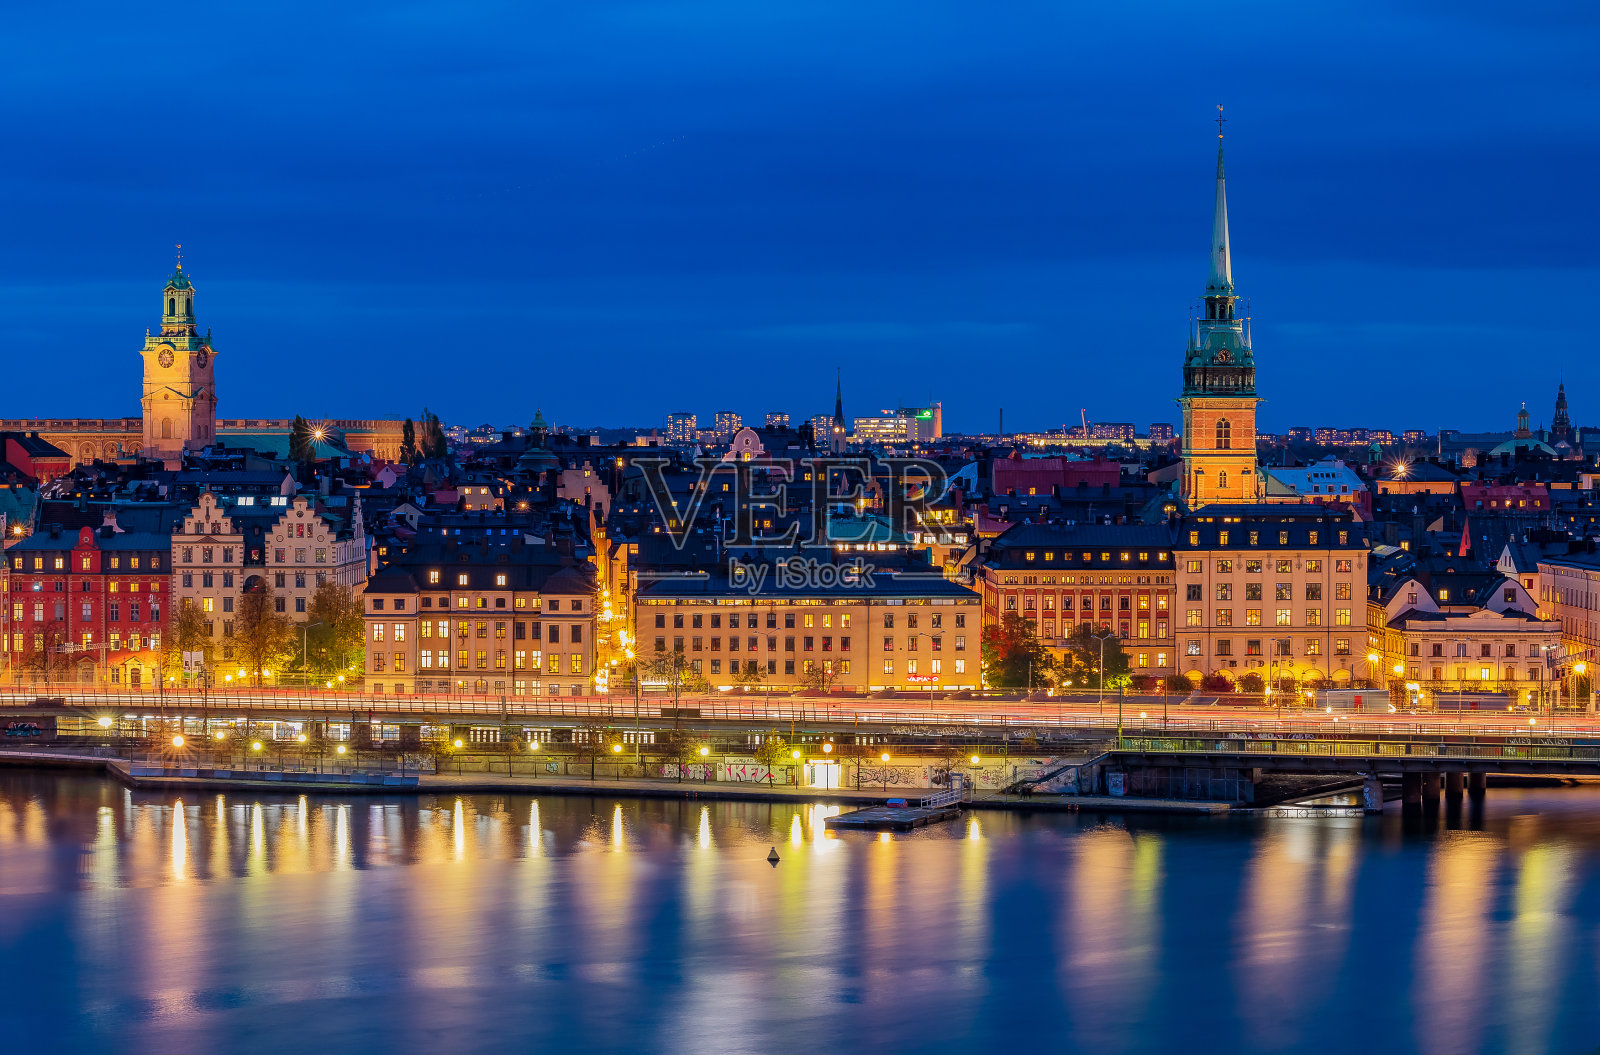 斯德哥尔摩老城Gamla Stan, Storkyrkan和瑞典的德国教堂的日落景观照片摄影图片